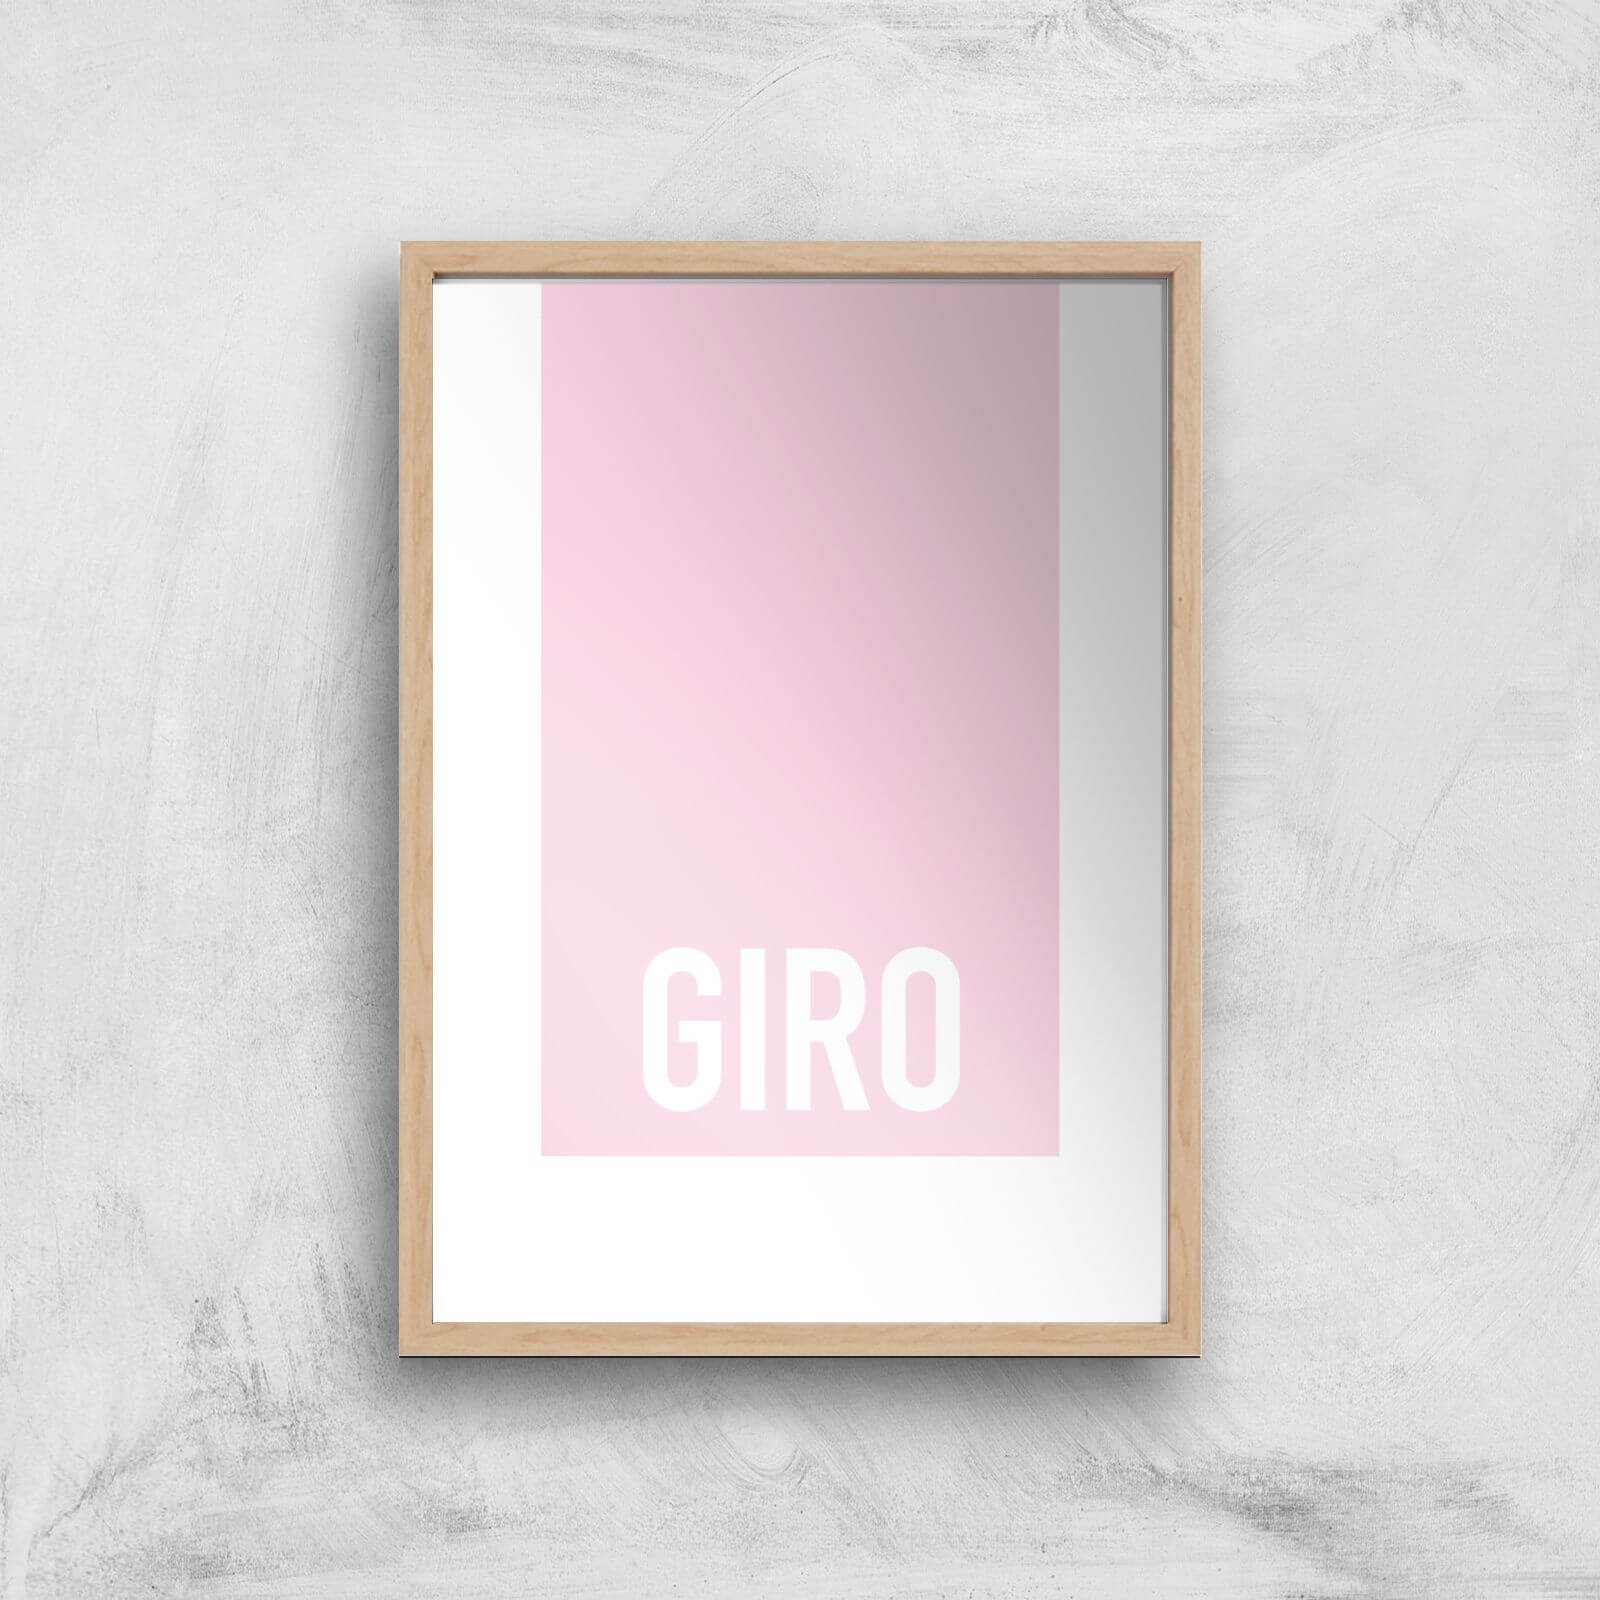 PBK Giro Giclee Art Print - A2 - Wooden Frame